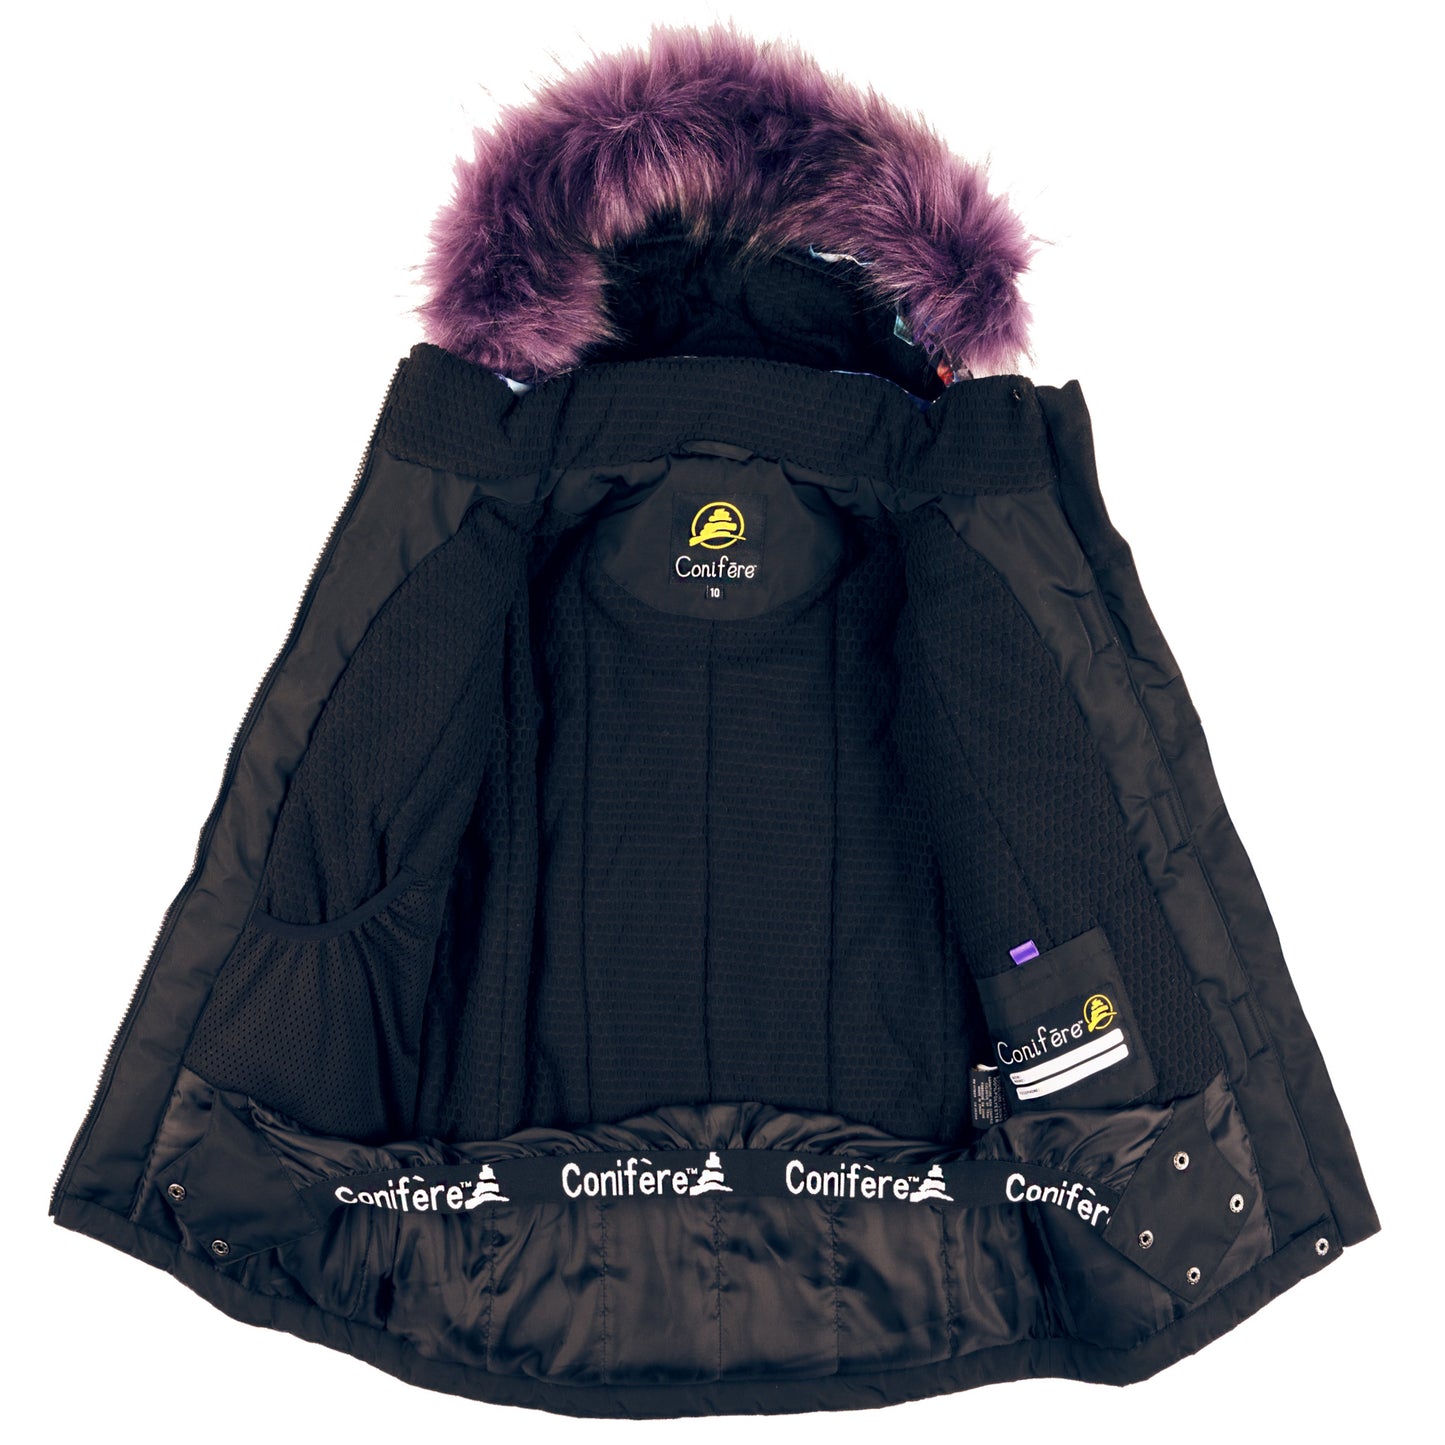 TAKLA - Girls Black Kaleidoscope Snowsuit Set